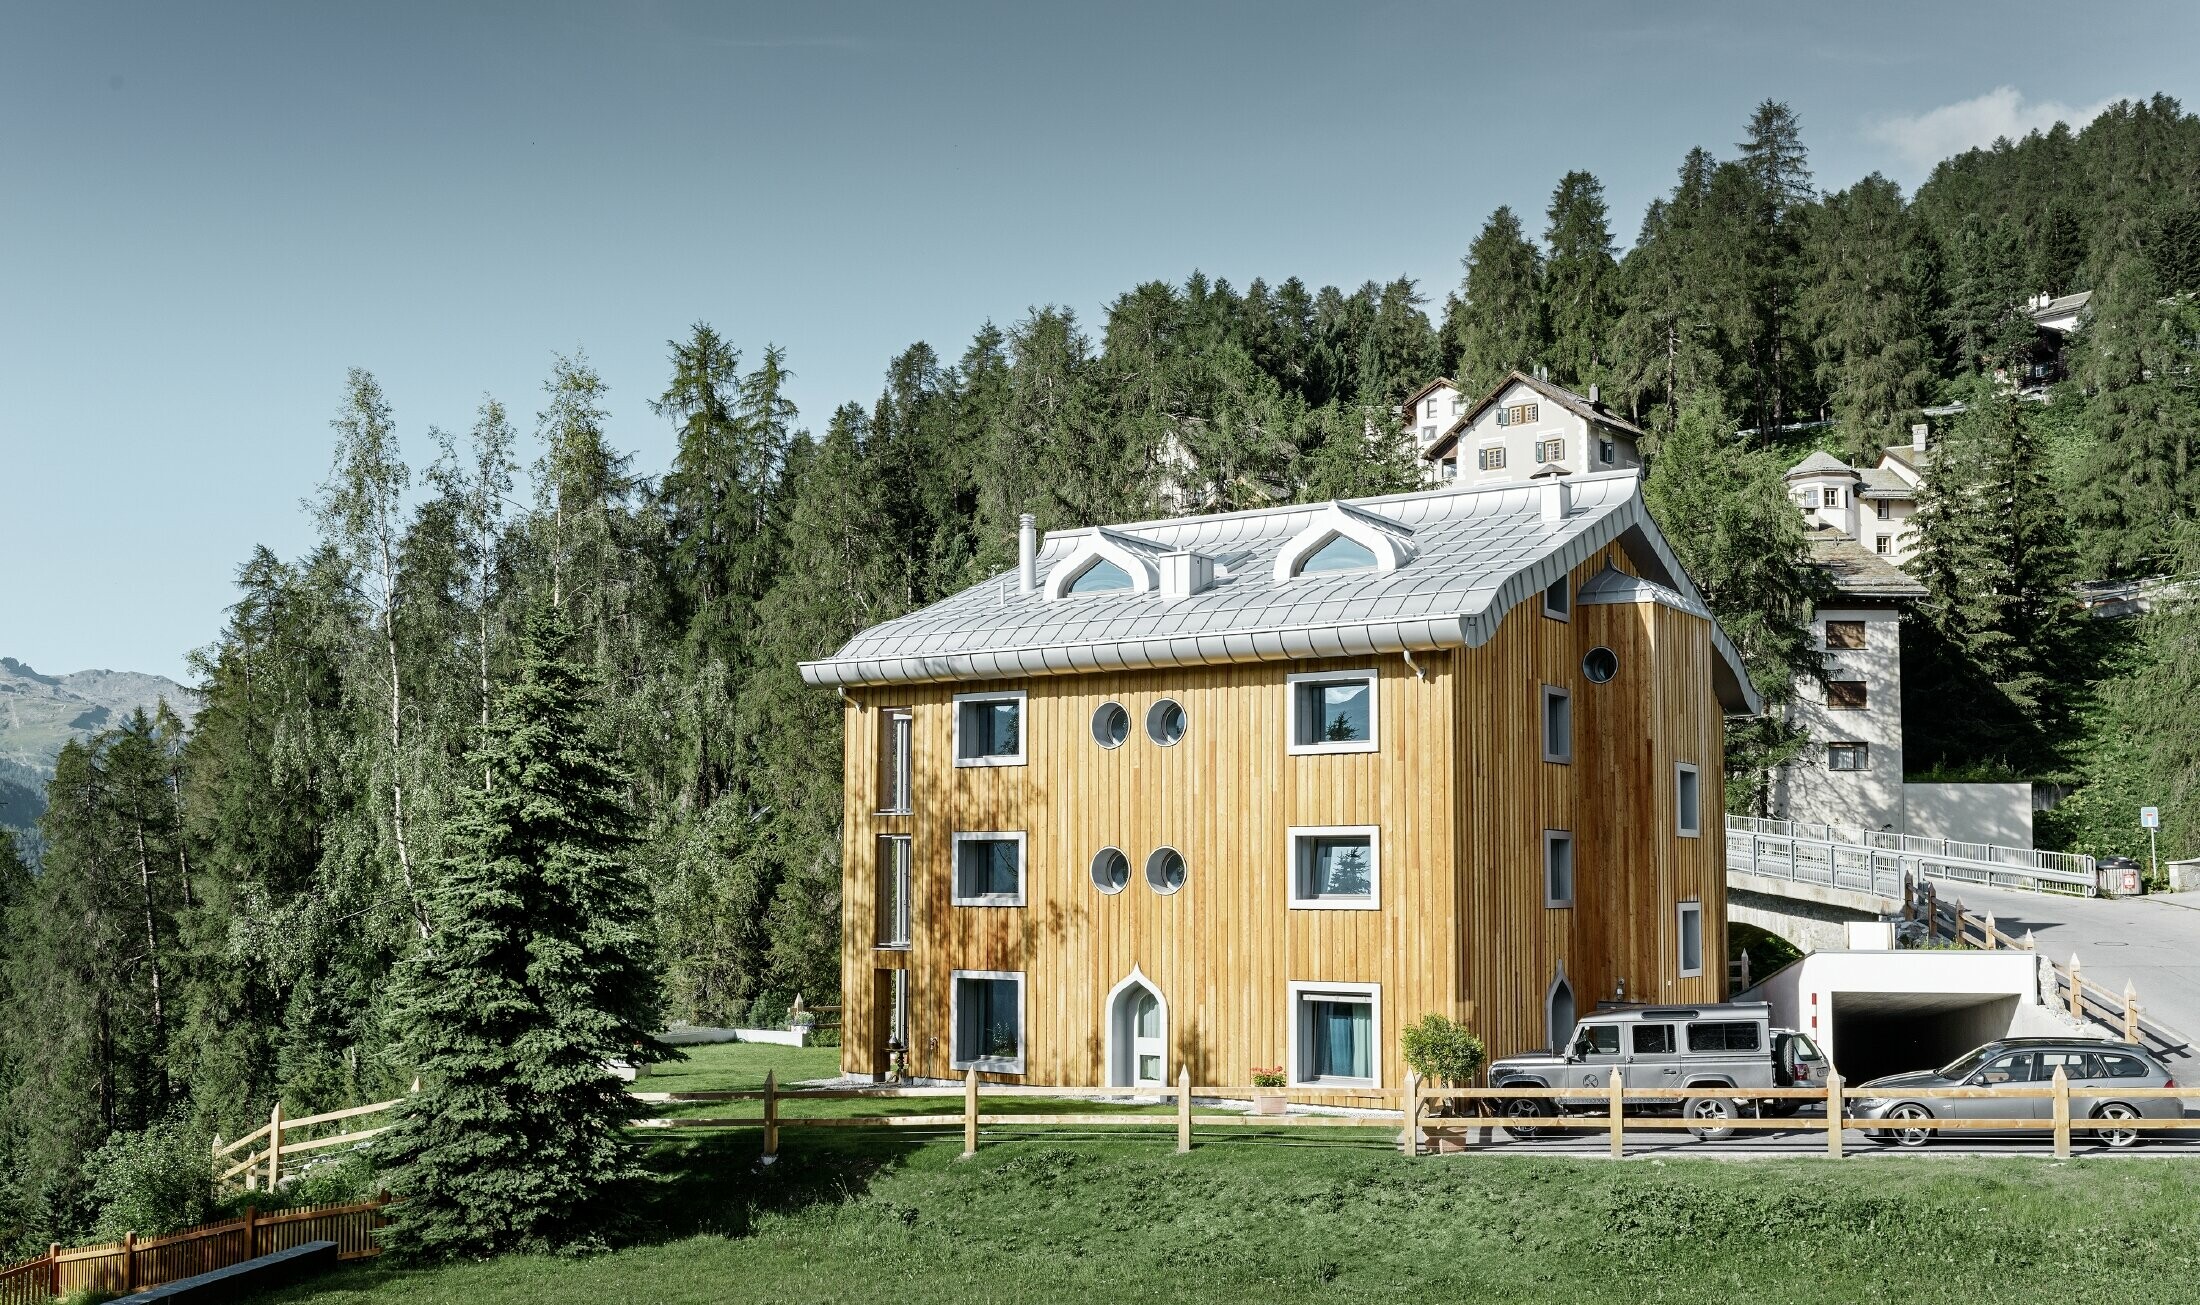 Complexe résidentiel de St. Moritz à la façade en bois — Toiture en aluminium PREFA de couleur argent métallisé avec avant-toit curviligne